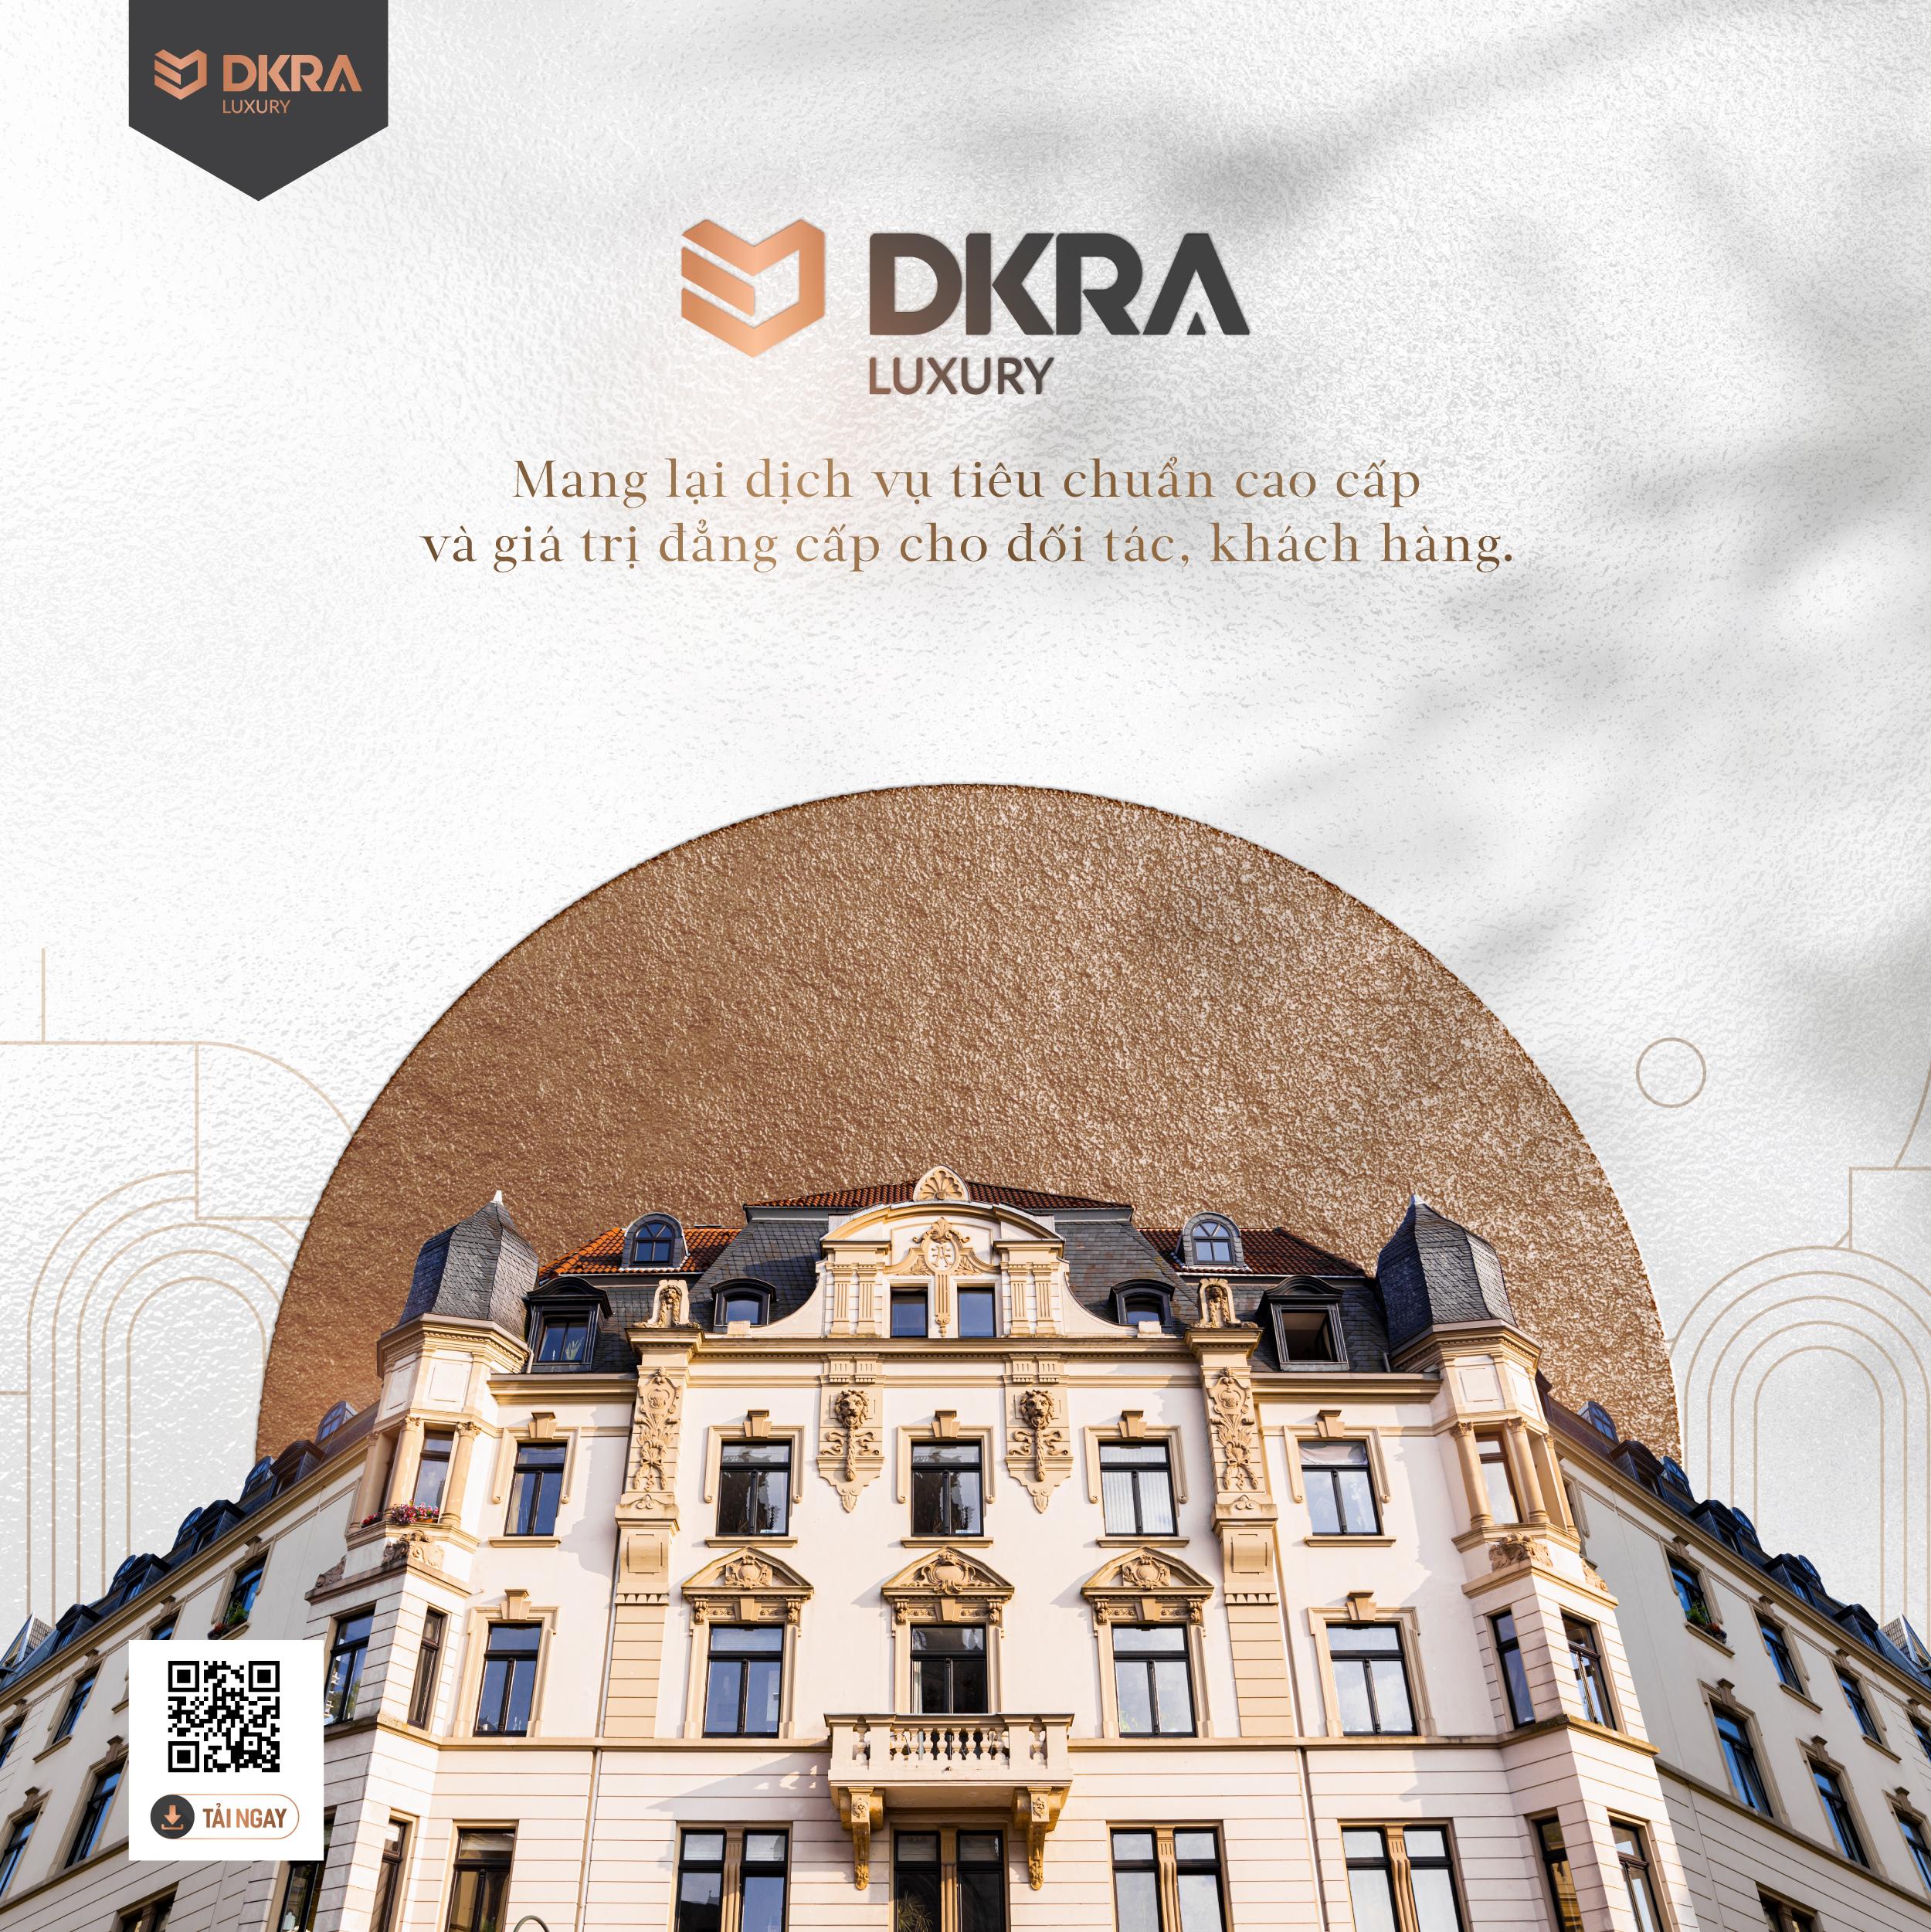 DKRA Luxury mang lại dịch vụ tiêu chuẩn cao cấp và giá trị đẳng cấp cho đối tác, khách hàng